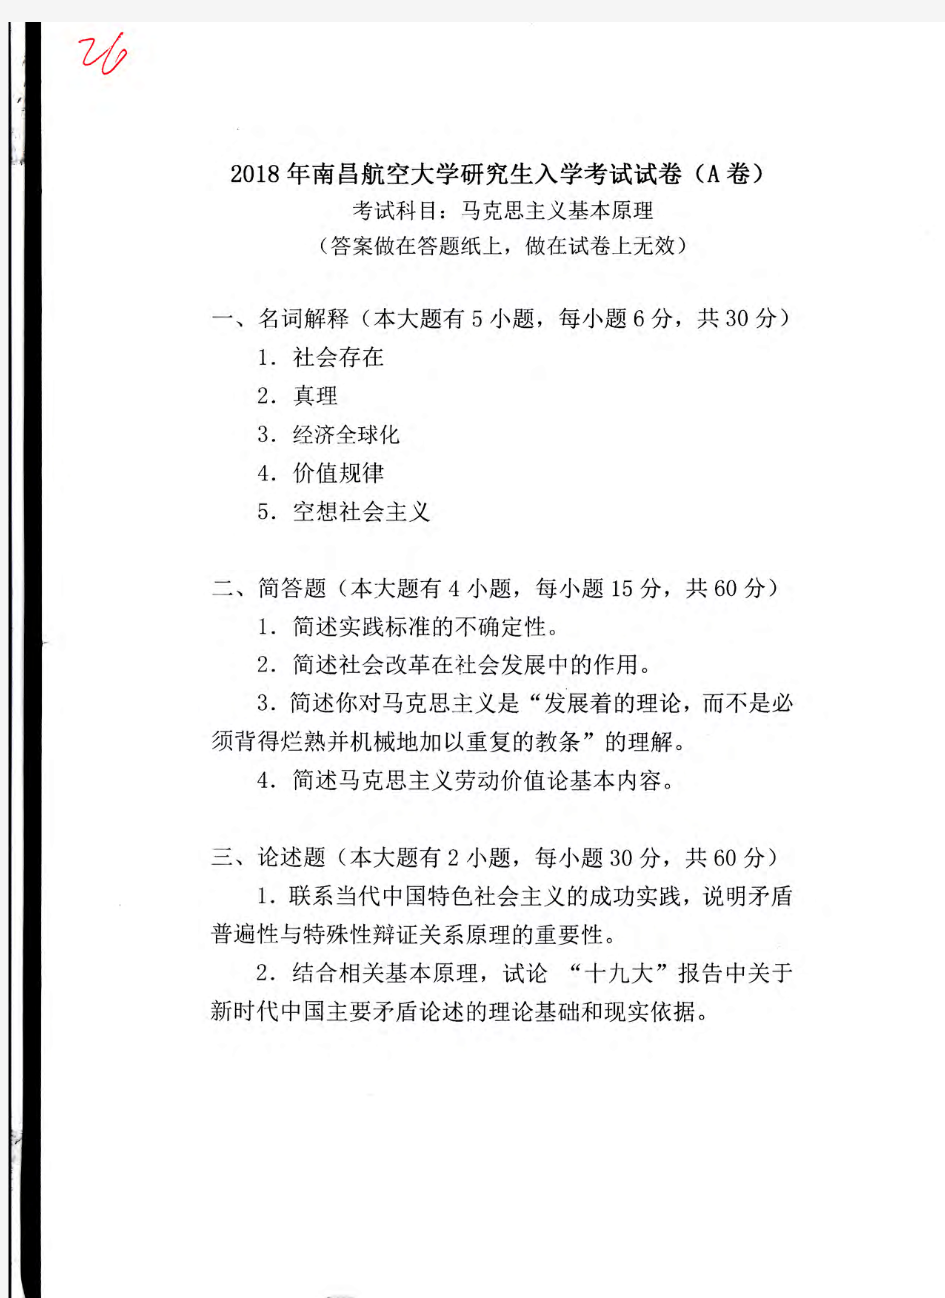 南昌航空大学736马克思主义基本原理2018年考研初试真题